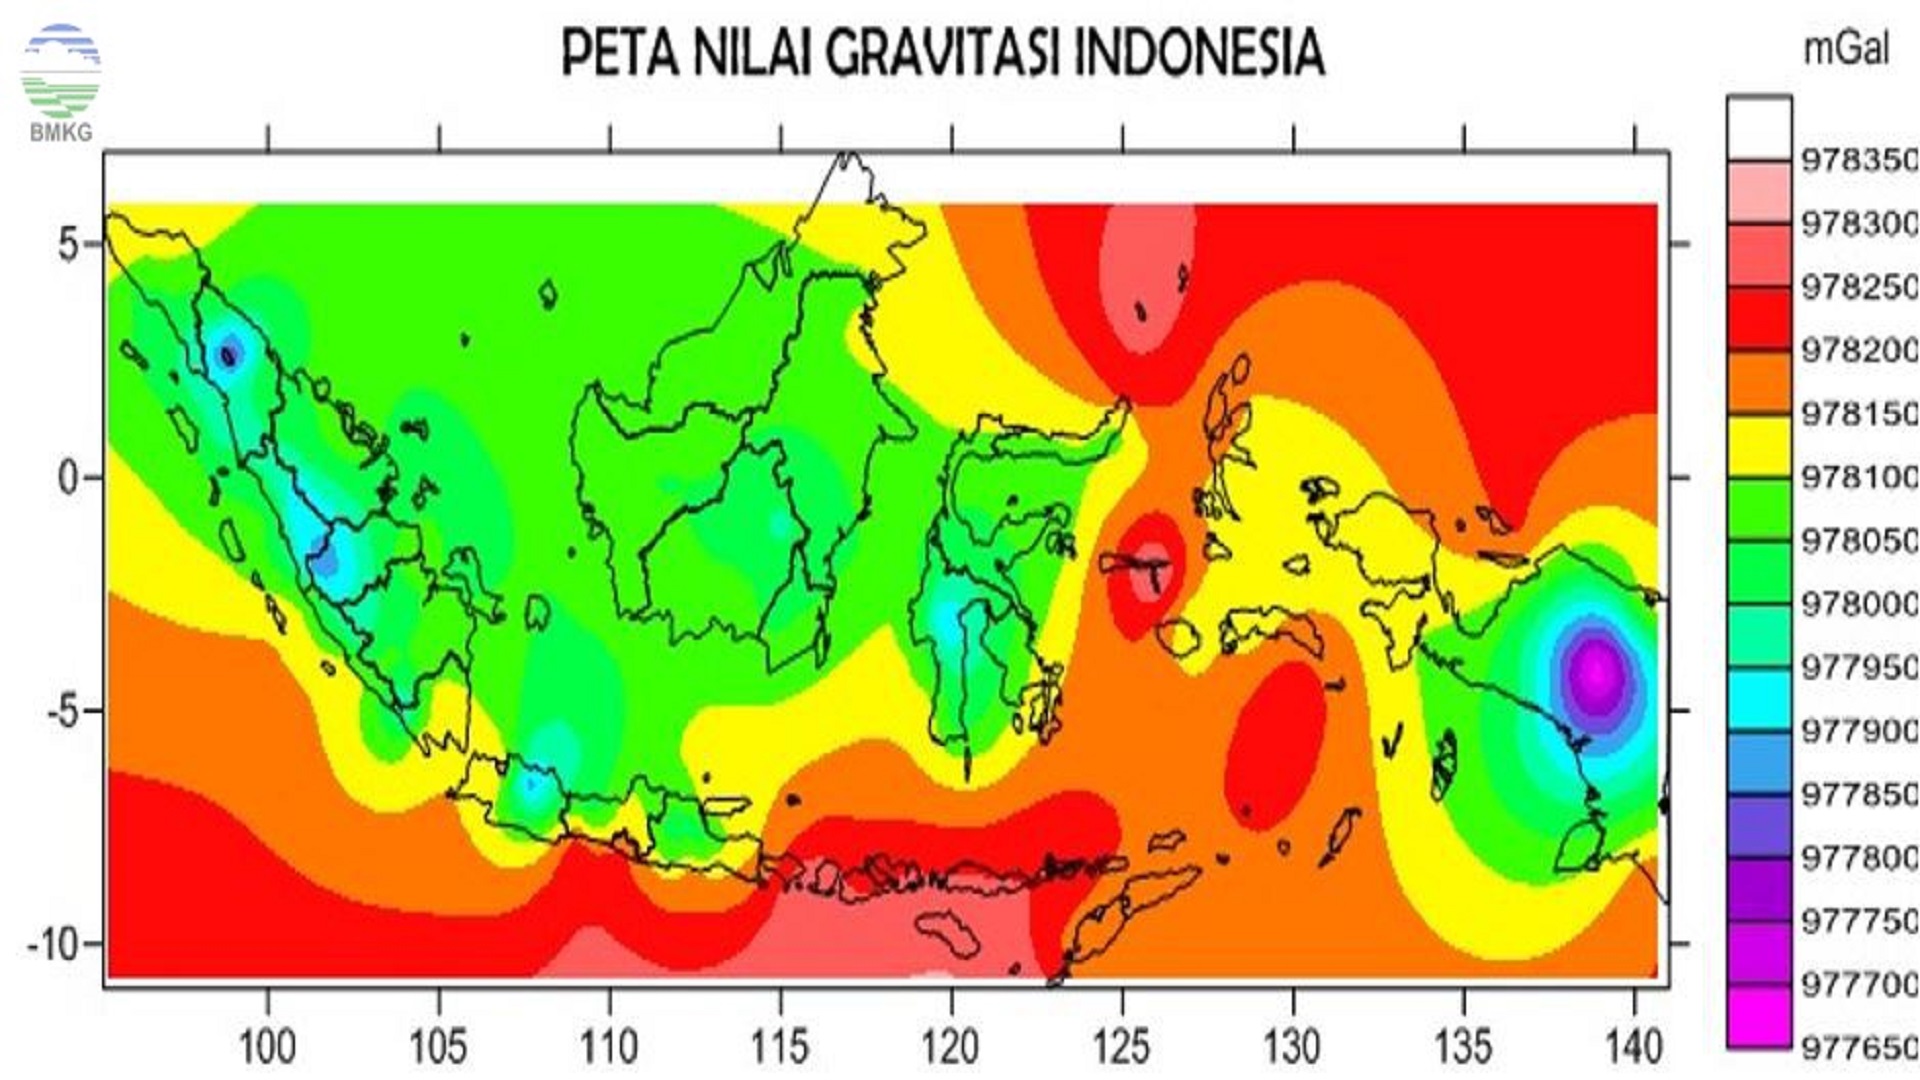 peta-nilai-gravitas-indonesia-bmkg.jpg